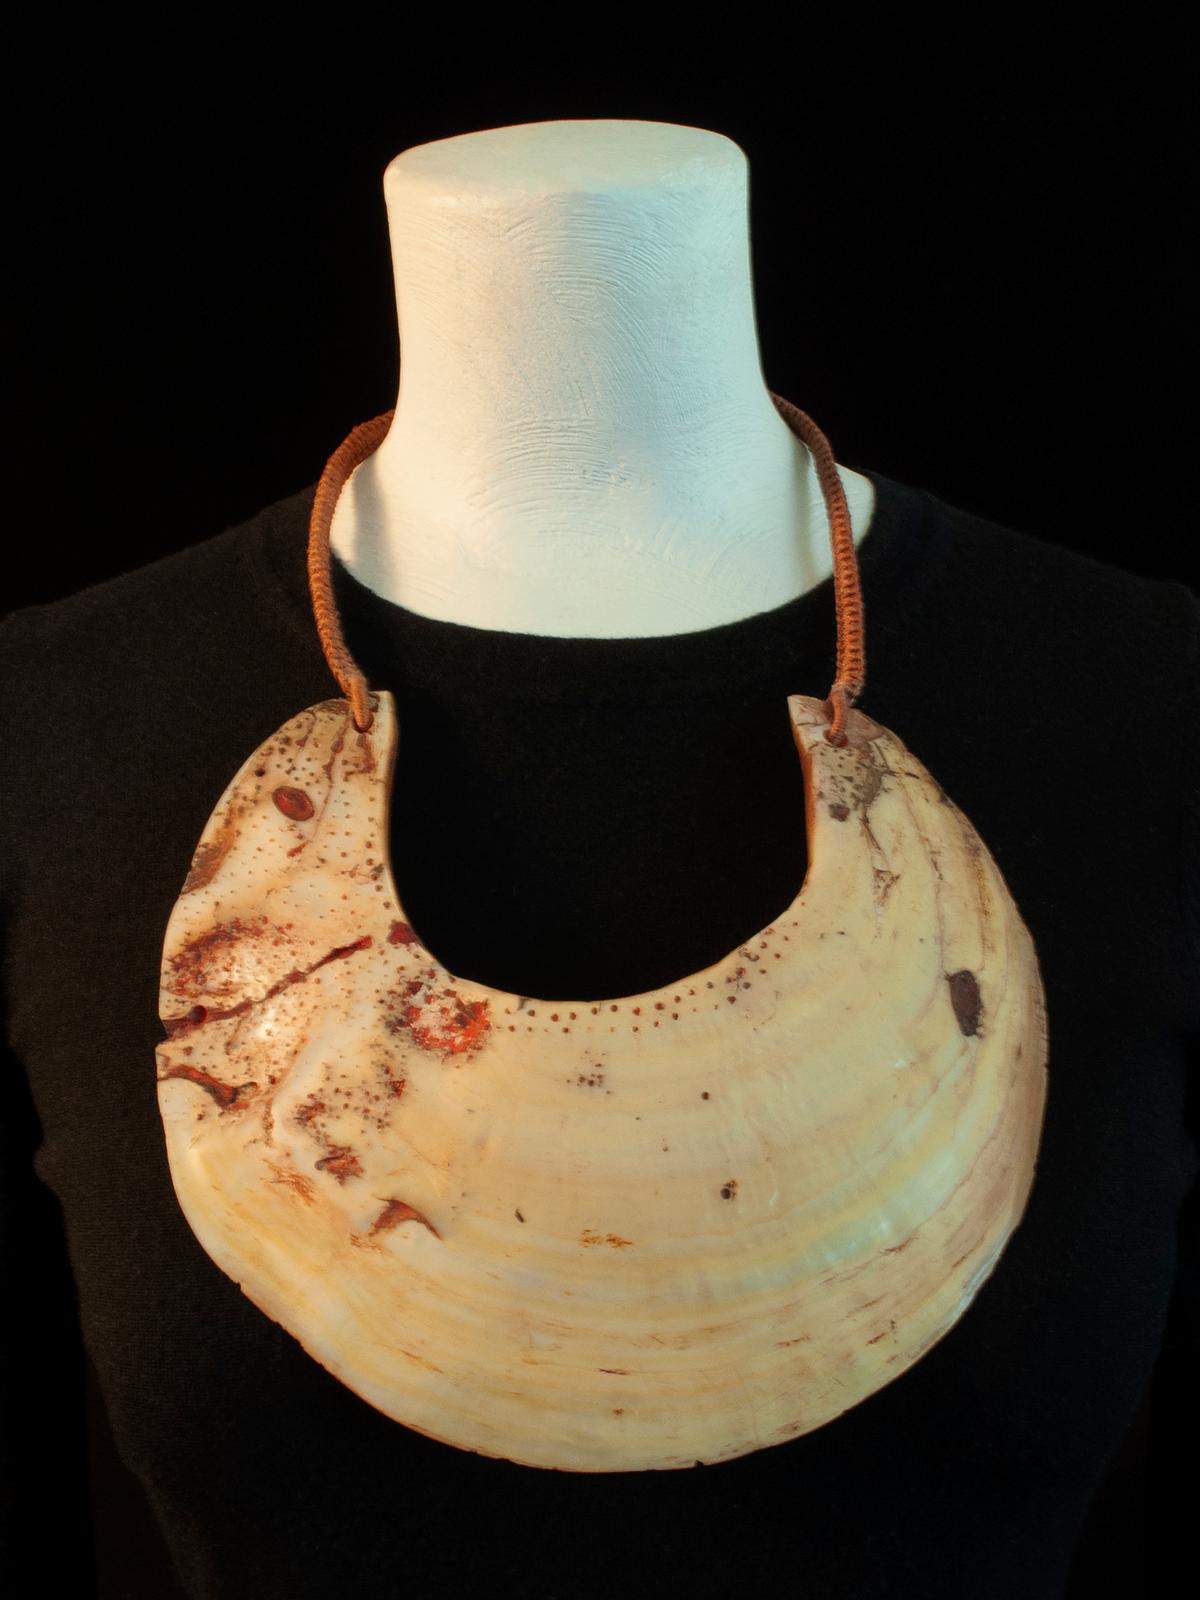 Collier pectoral en coquillage Kina du 20e siècle, bijoutier inconnu

Les coquillages Kina étaient traditionnellement portés sur les hauts plateaux occidentaux de Papouasie-Nouvelle-Guinée en guise de pectoraux, soit avec une lanière en fibre, soit